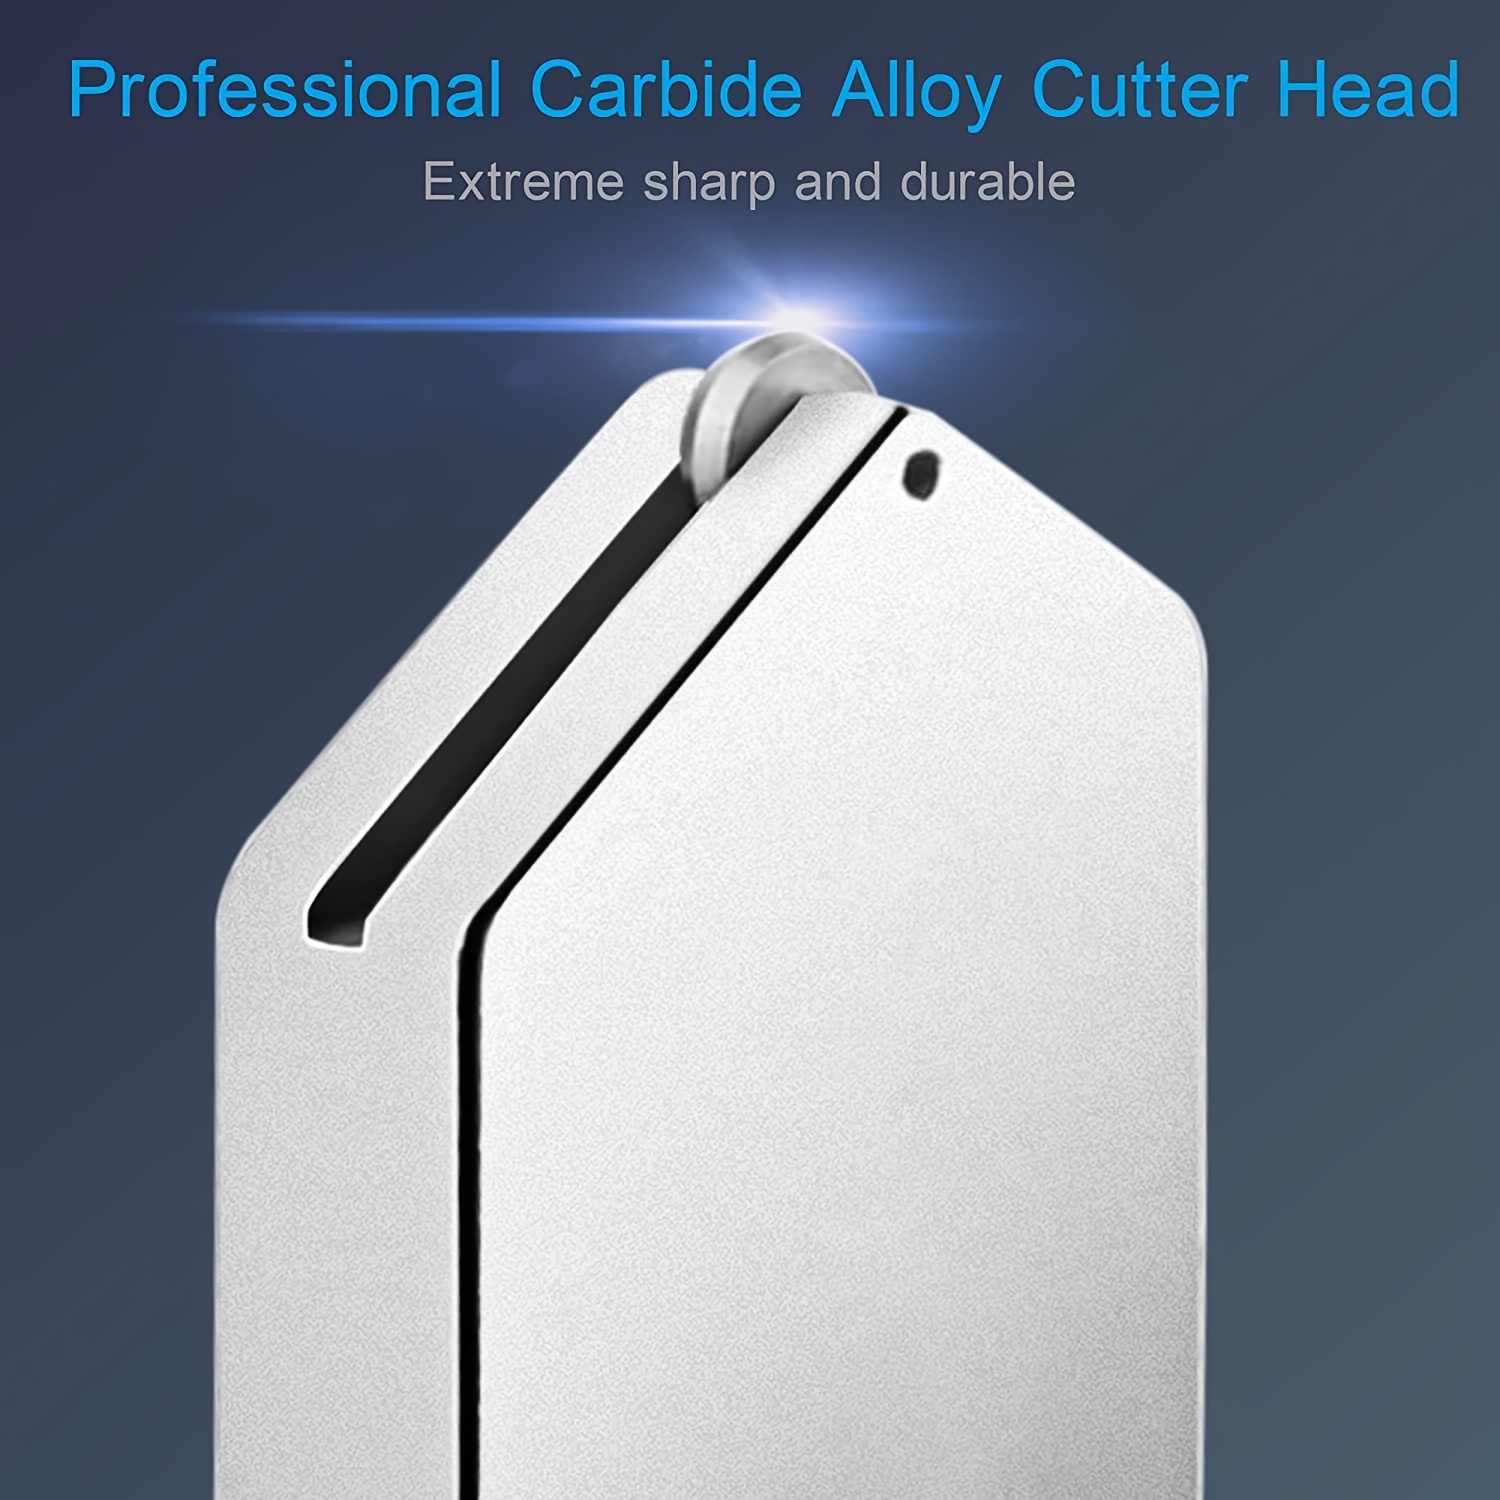 Professional Glass Cutter Kit 6mm Professional Cutting Head - Temu